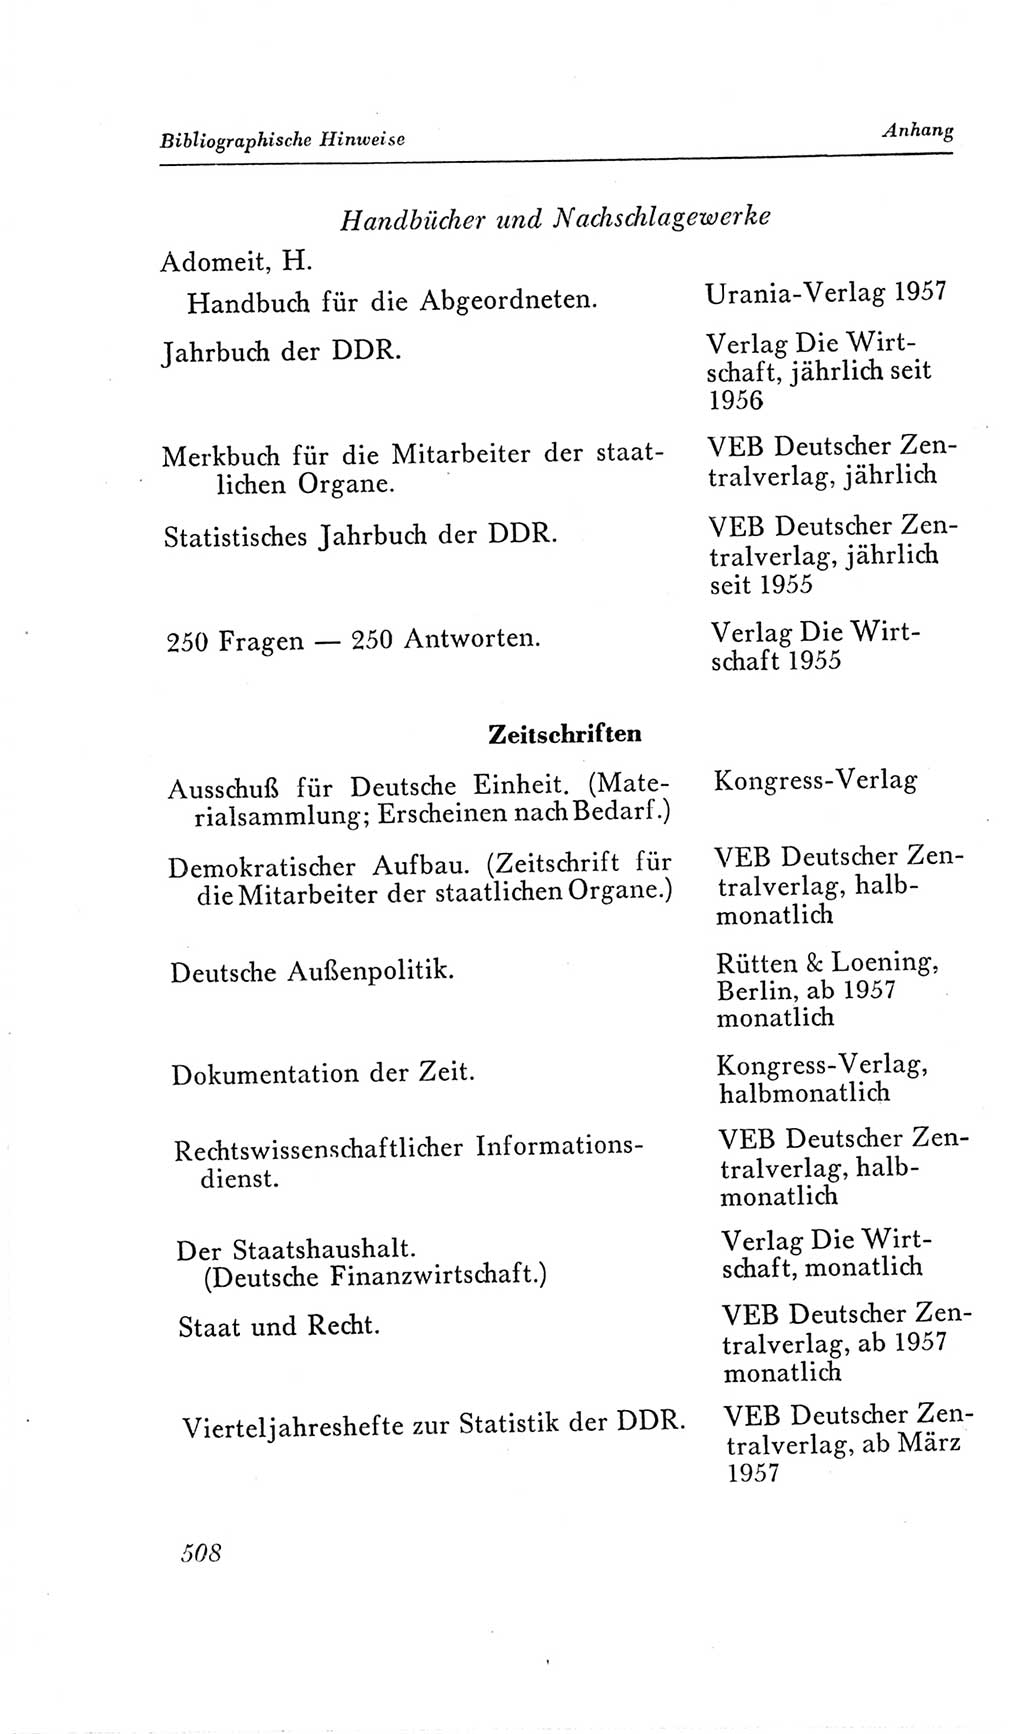 Handbuch der Volkskammer (VK) der Deutschen Demokratischen Republik (DDR), 2. Wahlperiode 1954-1958, Seite 508 (Hdb. VK. DDR, 2. WP. 1954-1958, S. 508)